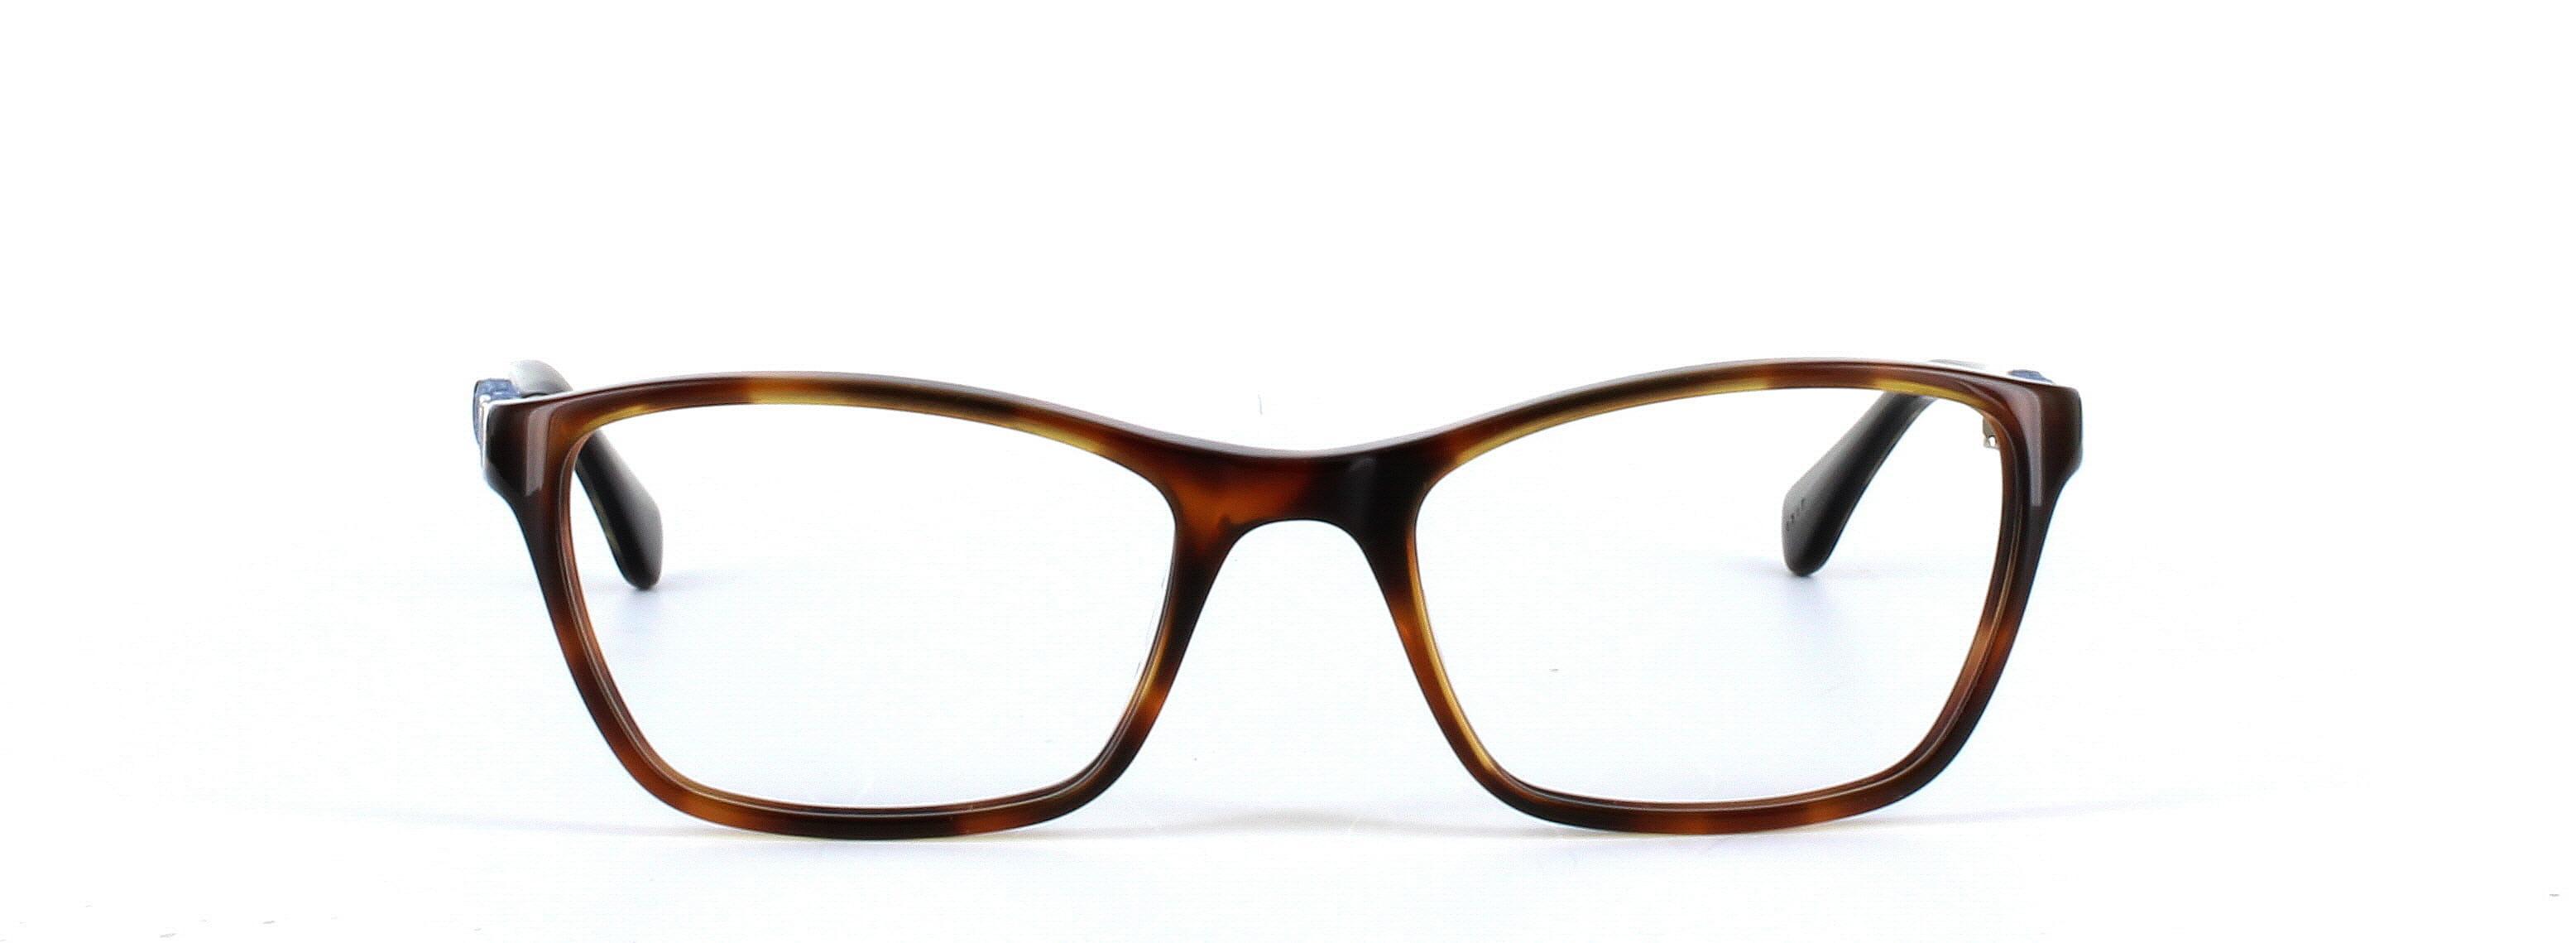 GUESS (GU2594-056) Brown Full Rim Rectangular Acetate Glasses - Image View 5